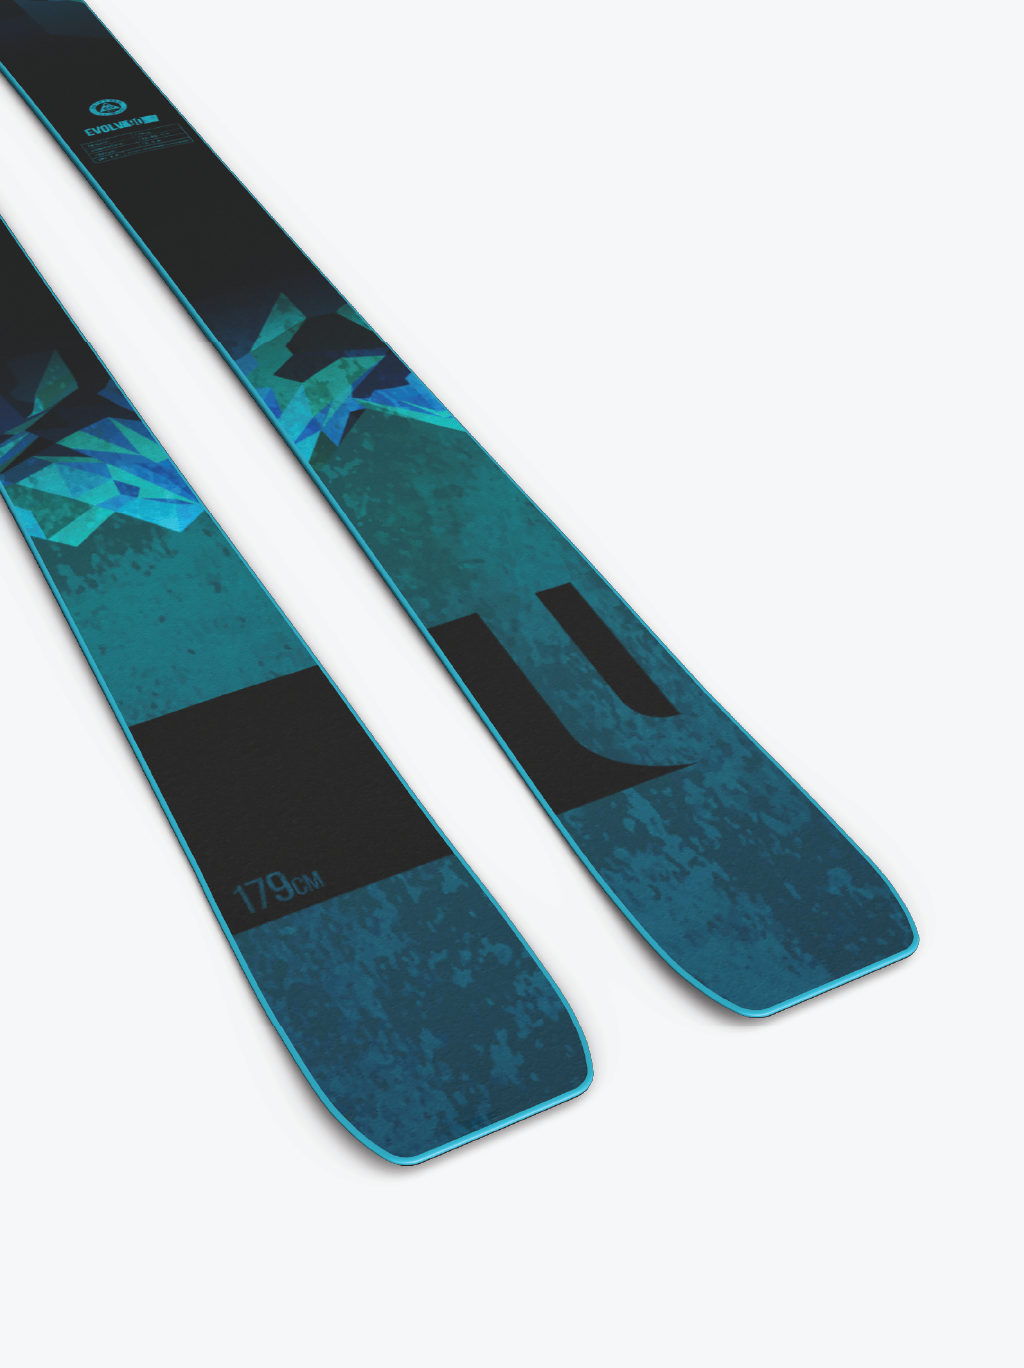 Liberty Skis 2023 Skis Liberty Skis Evolv 90 (Demo) - 2023